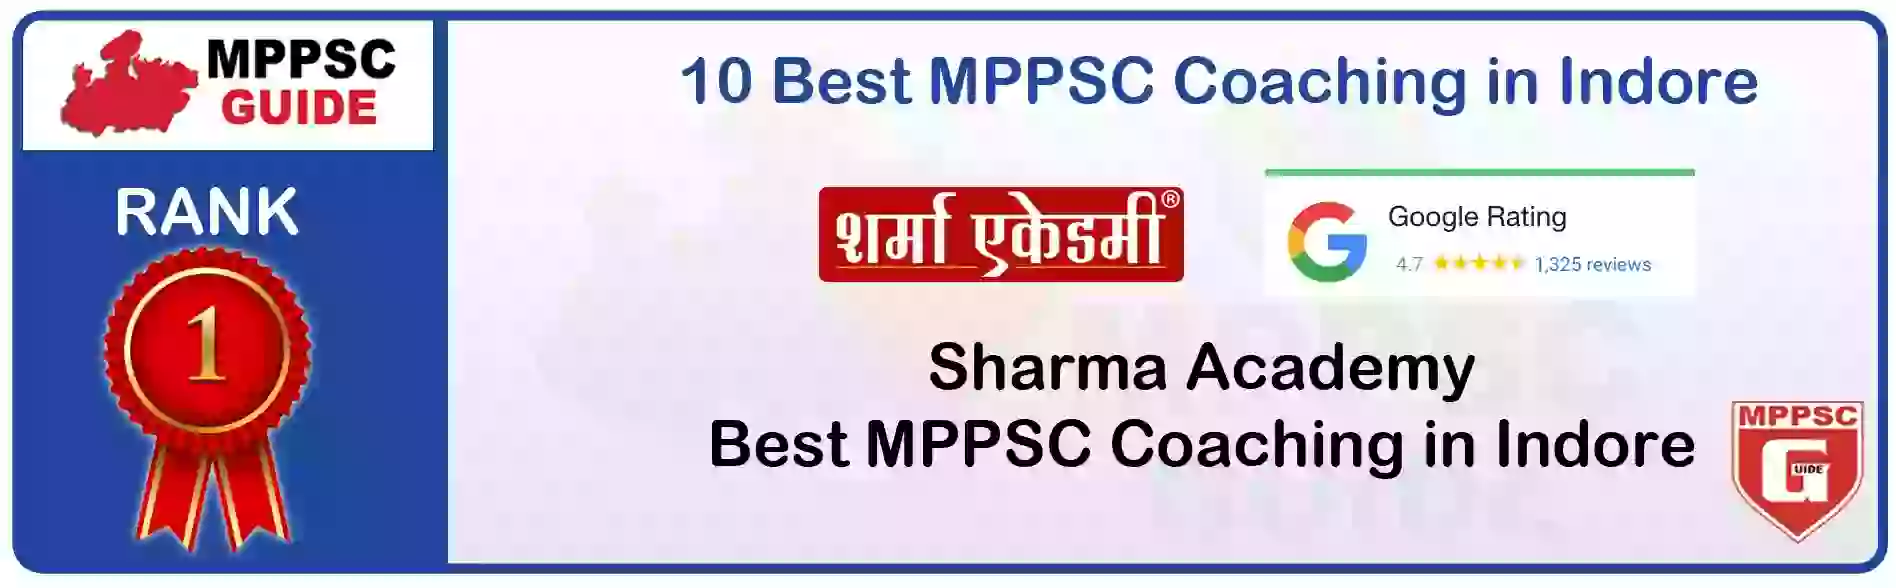 MPPSC Coaching in Sagar, MPPSC Coaching Institute In Sagar, Best MPPSC Coaching in Sagar, Top 10 MPPSC Coaching In Sagar, best mppsc coaching institute in sagar, MPPSC Coaching Classes In Sagar, MPPSC Online Coaching In Sagar, mppsc coaching in Sagar bhanwarkua